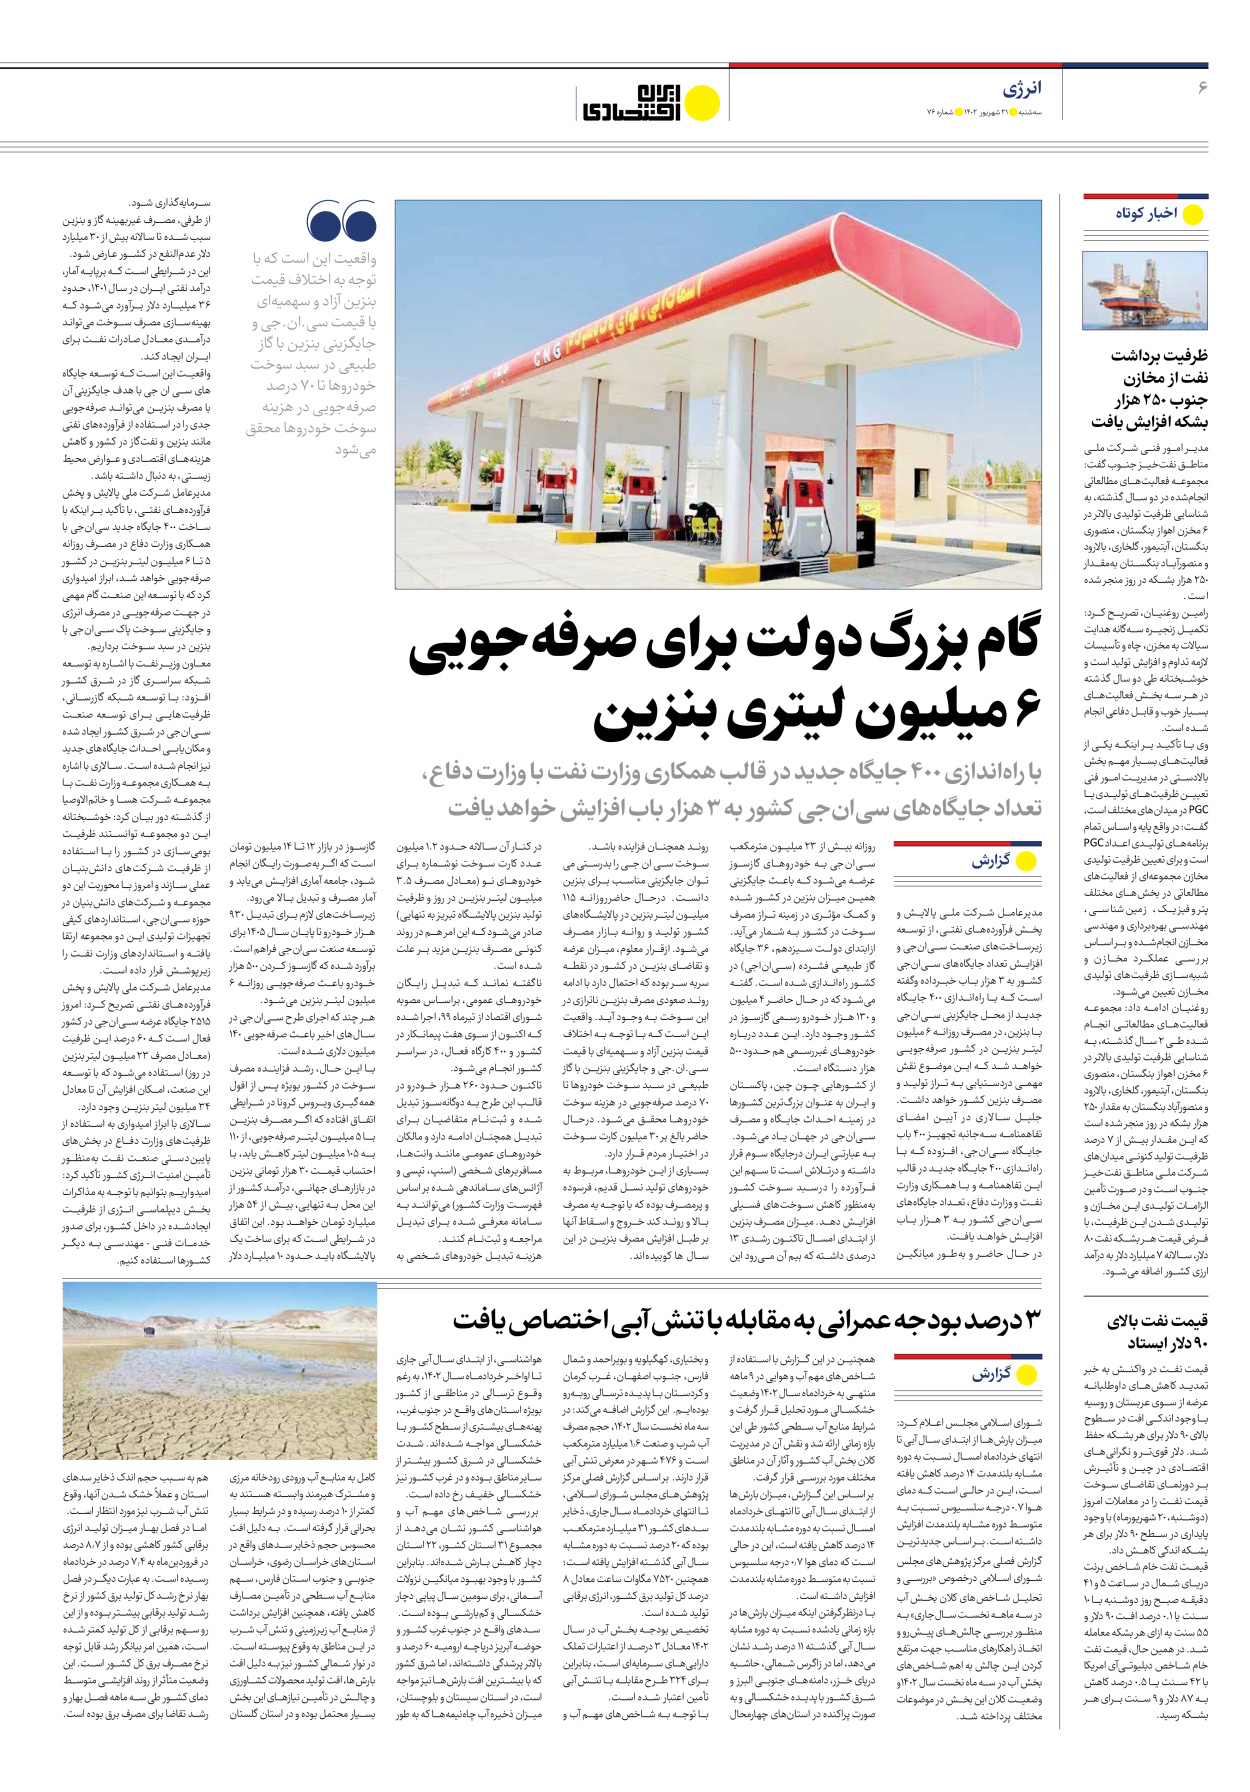 روزنامه ایران اقتصادی - شماره هفتاد و شش - ۲۱ شهریور ۱۴۰۲ - صفحه ۶